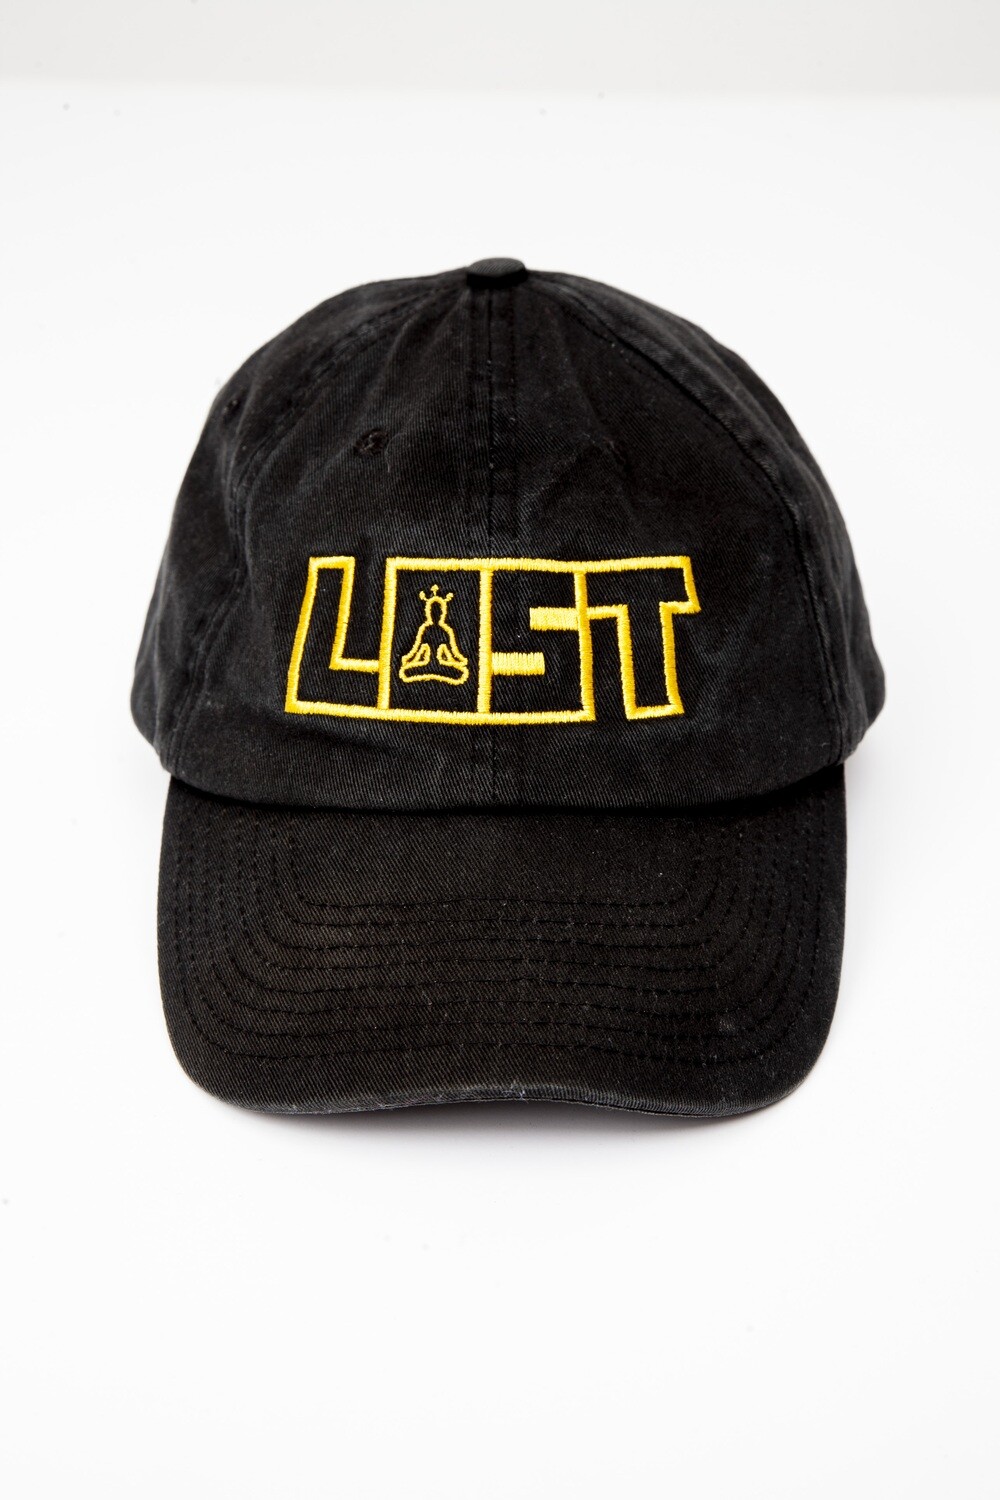 OG LOST HAT